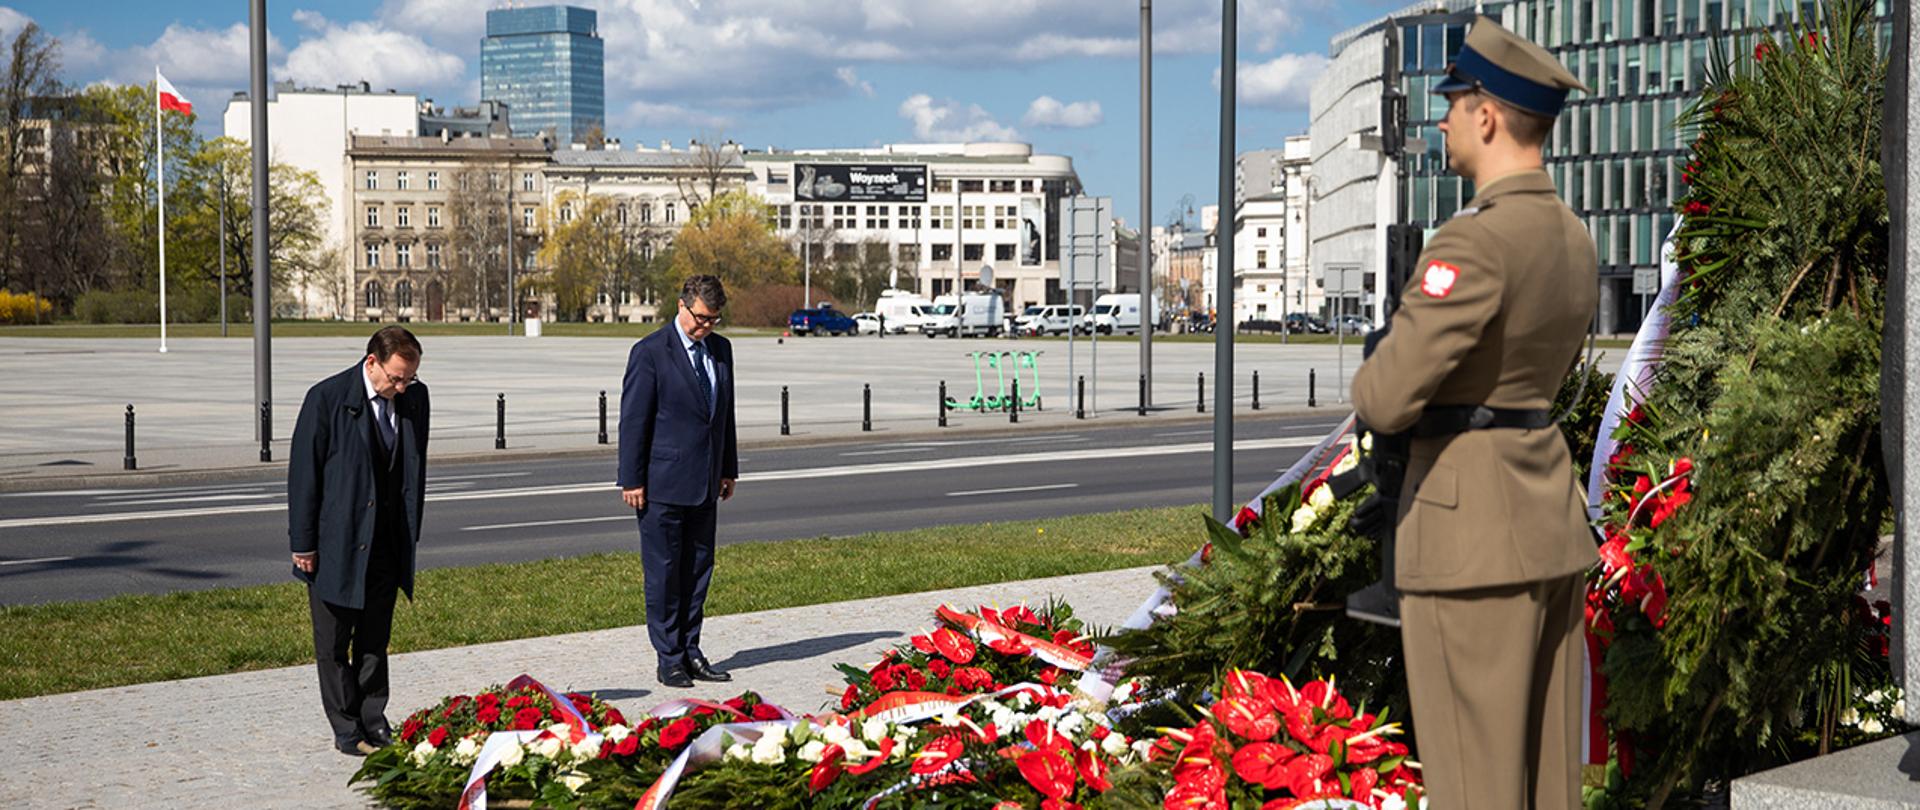 Na zdjęciu widać stojących z pochylonymi głowami Mariusza Kamińskiego ministra SWiA i Macieja Wąsika wiceministra SWiA przed pomnikiem Lecha Kaczyńskiego prezydenta RP w Warszawie. Widać również jednego z żołnierzy pełniących wartę przy pomniku i wiele złożonych wieńców